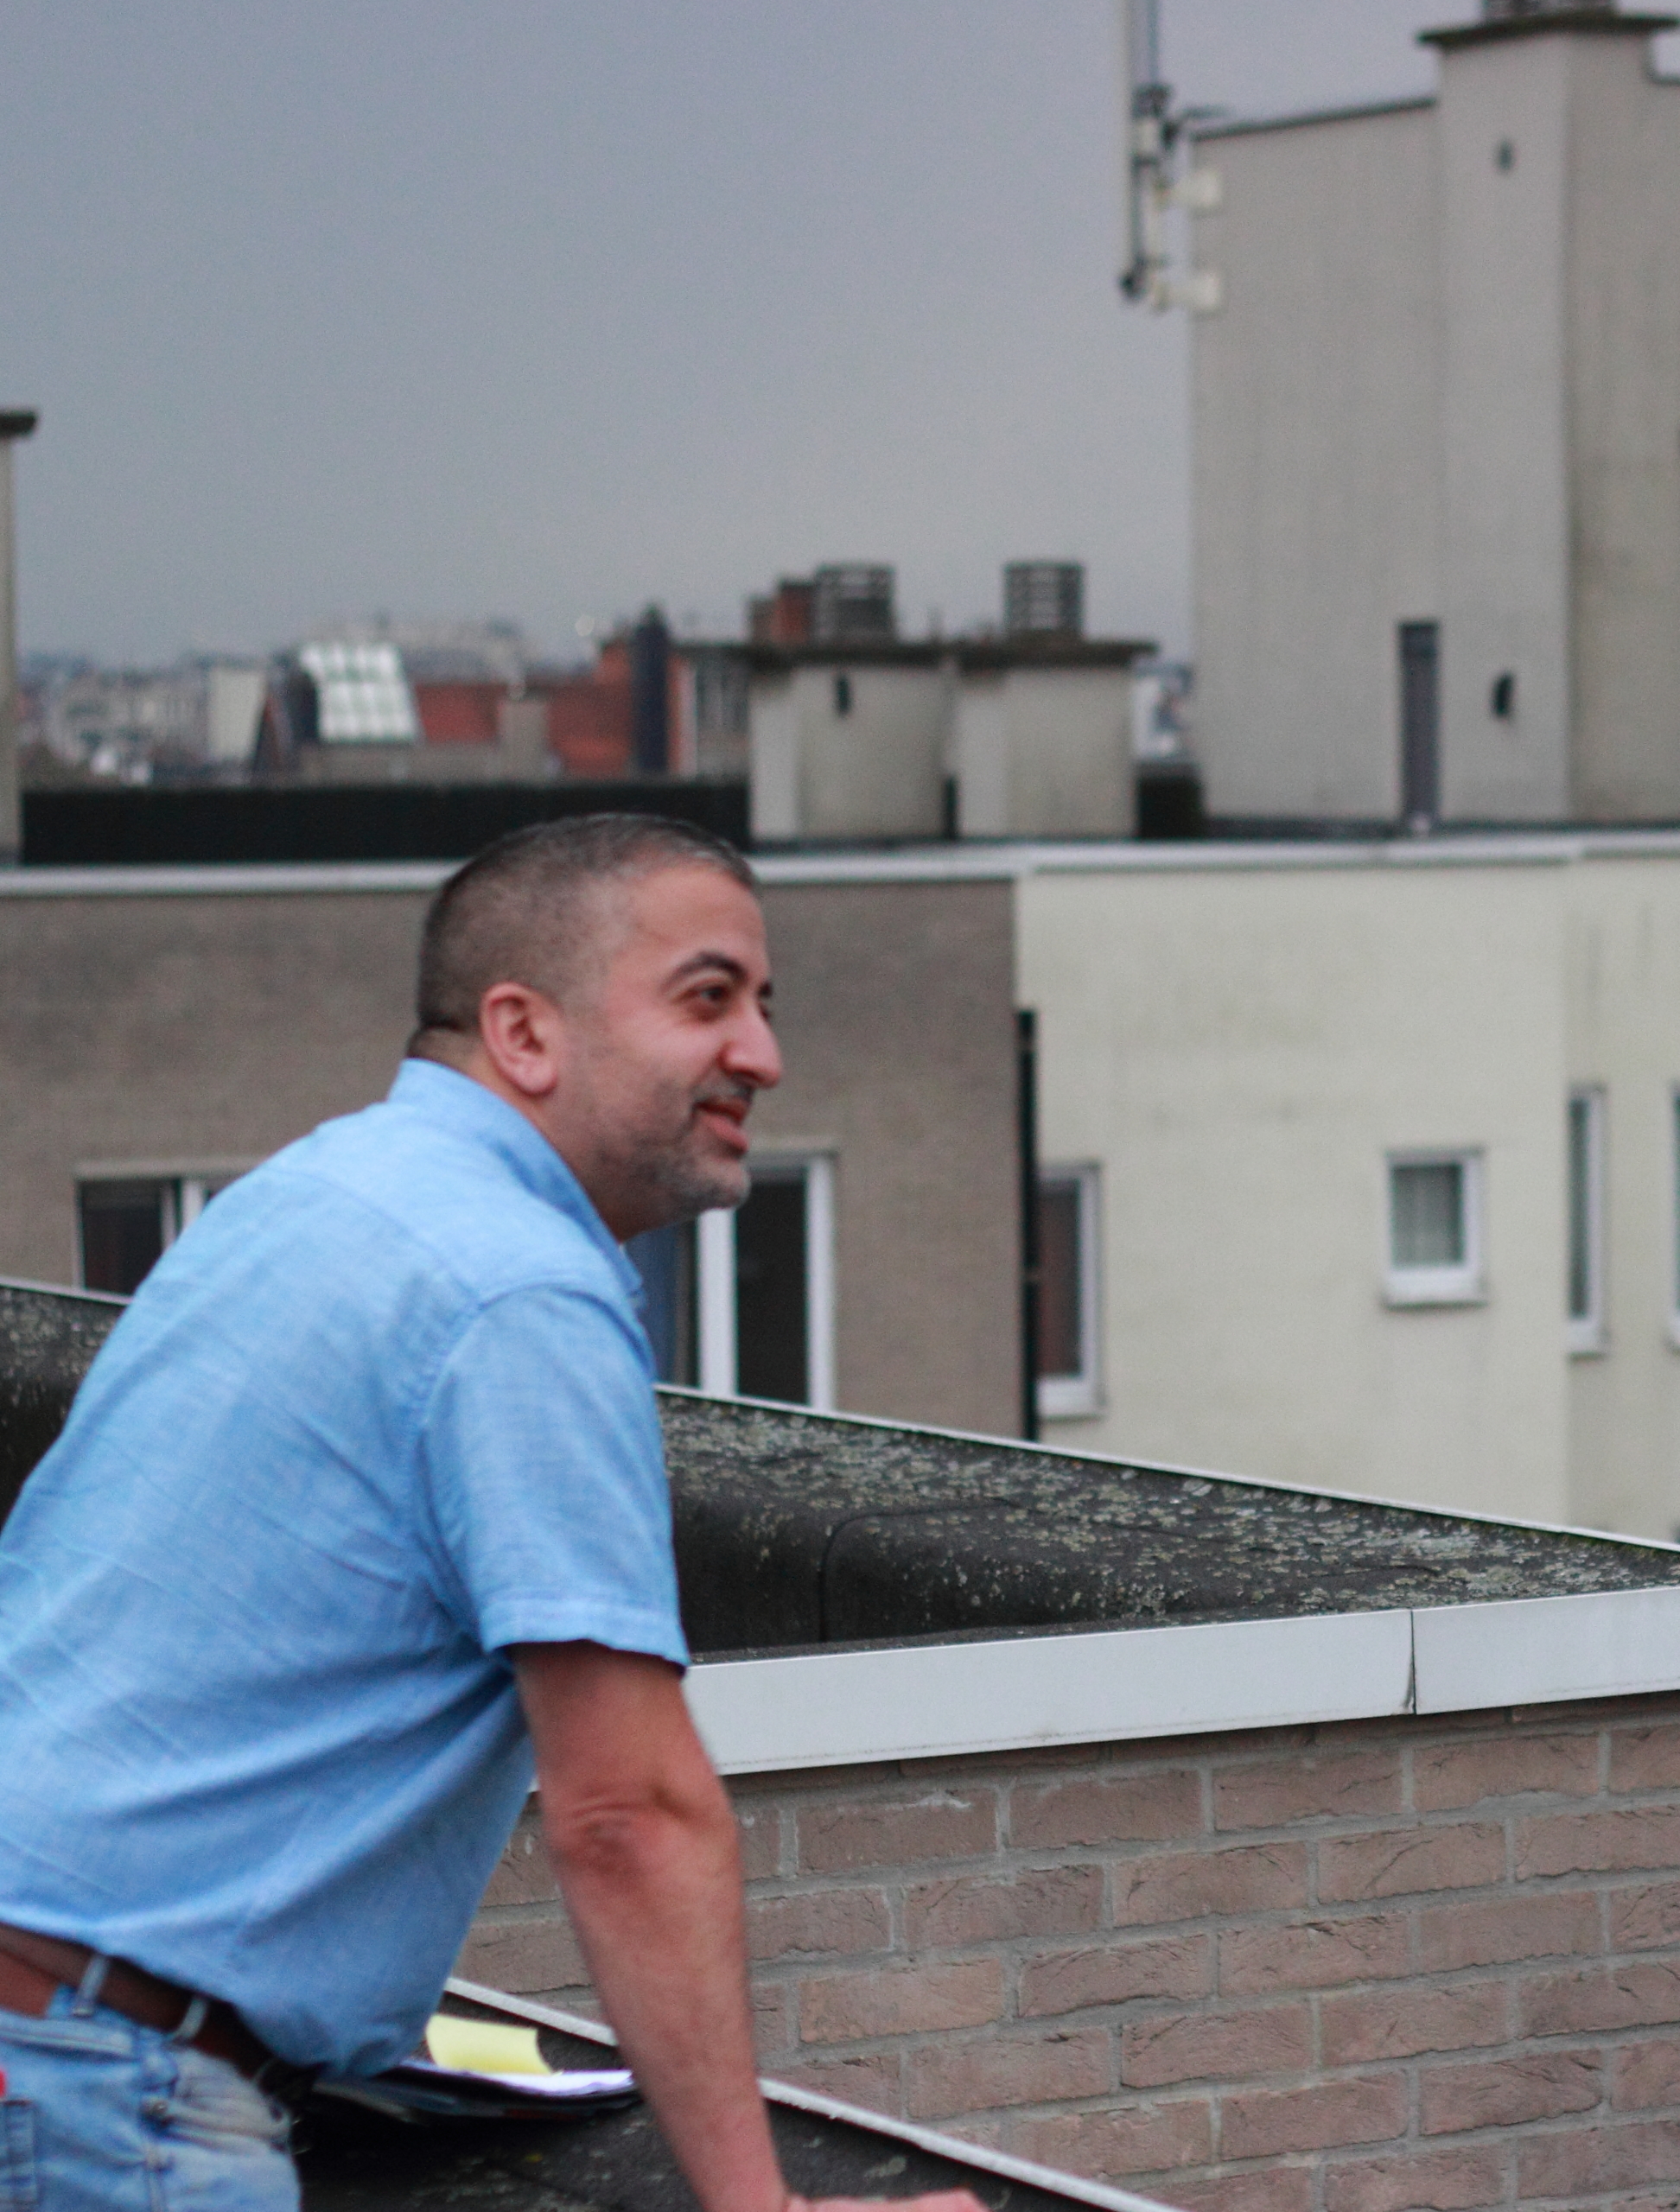 Majid kijkt rond vanop het dak